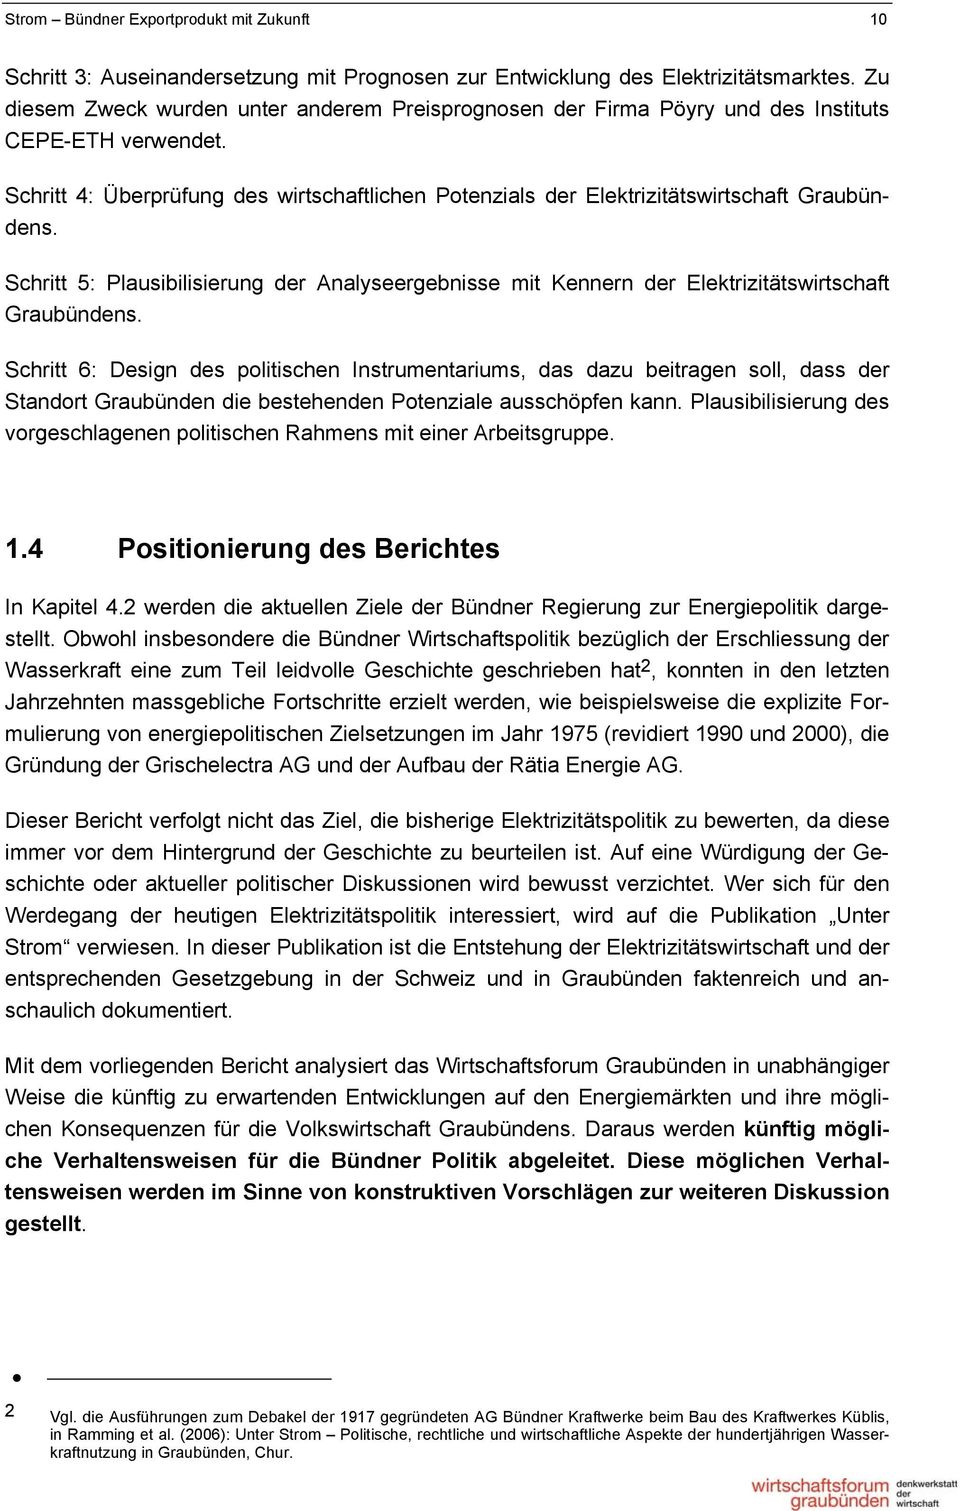 Schritt 4: Überprüfung des wirtschaftlichen Potenzials der Elektrizitätswirtschaft Graubündens. Schritt 5: Plausibilisierung der Analyseergebnisse mit Kennern der Elektrizitätswirtschaft Graubündens.